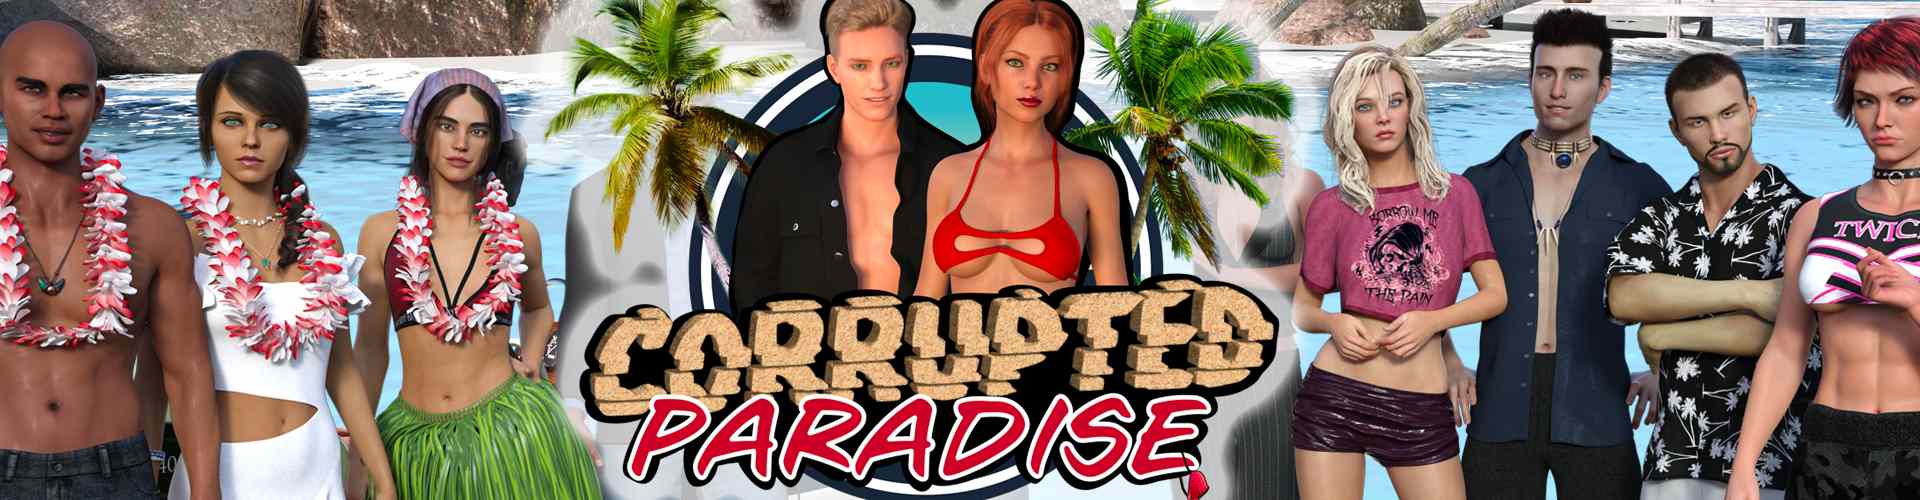 Corrupted Paradise [SecretGame18] Adult xxx Porn Game Download